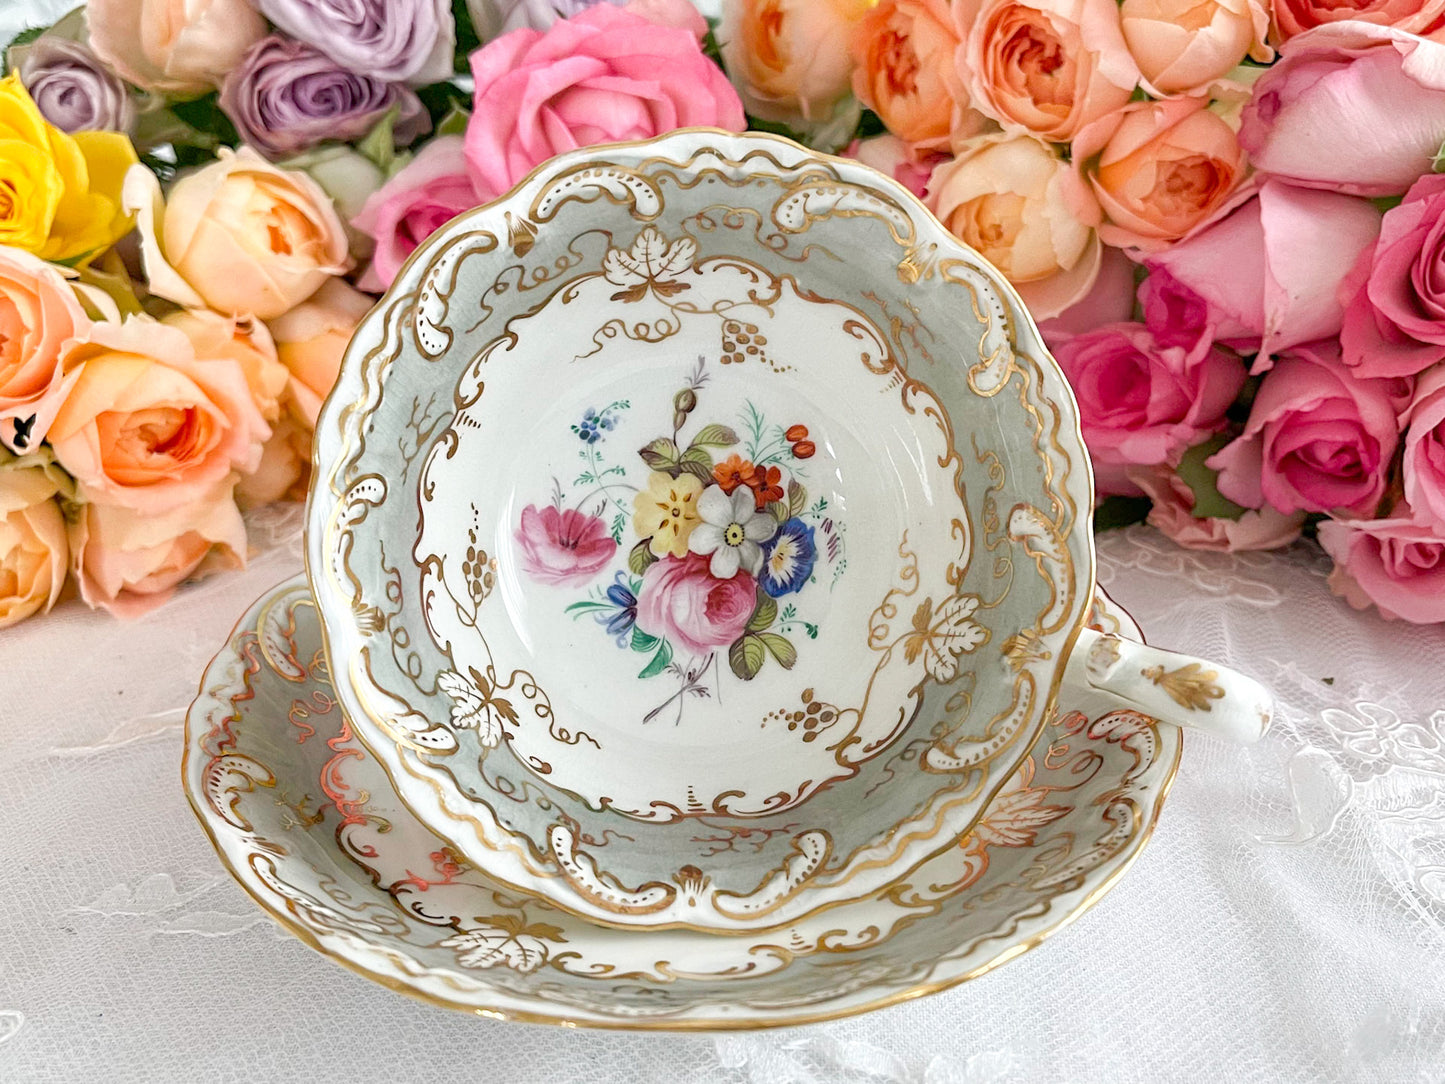 コールポートのロココリバイバルのアンティークカップ。ハンドペイントで描かれた花々が美しいです。Rose Antiquesは厳選した英国アンティーク磁器をご紹介しています。